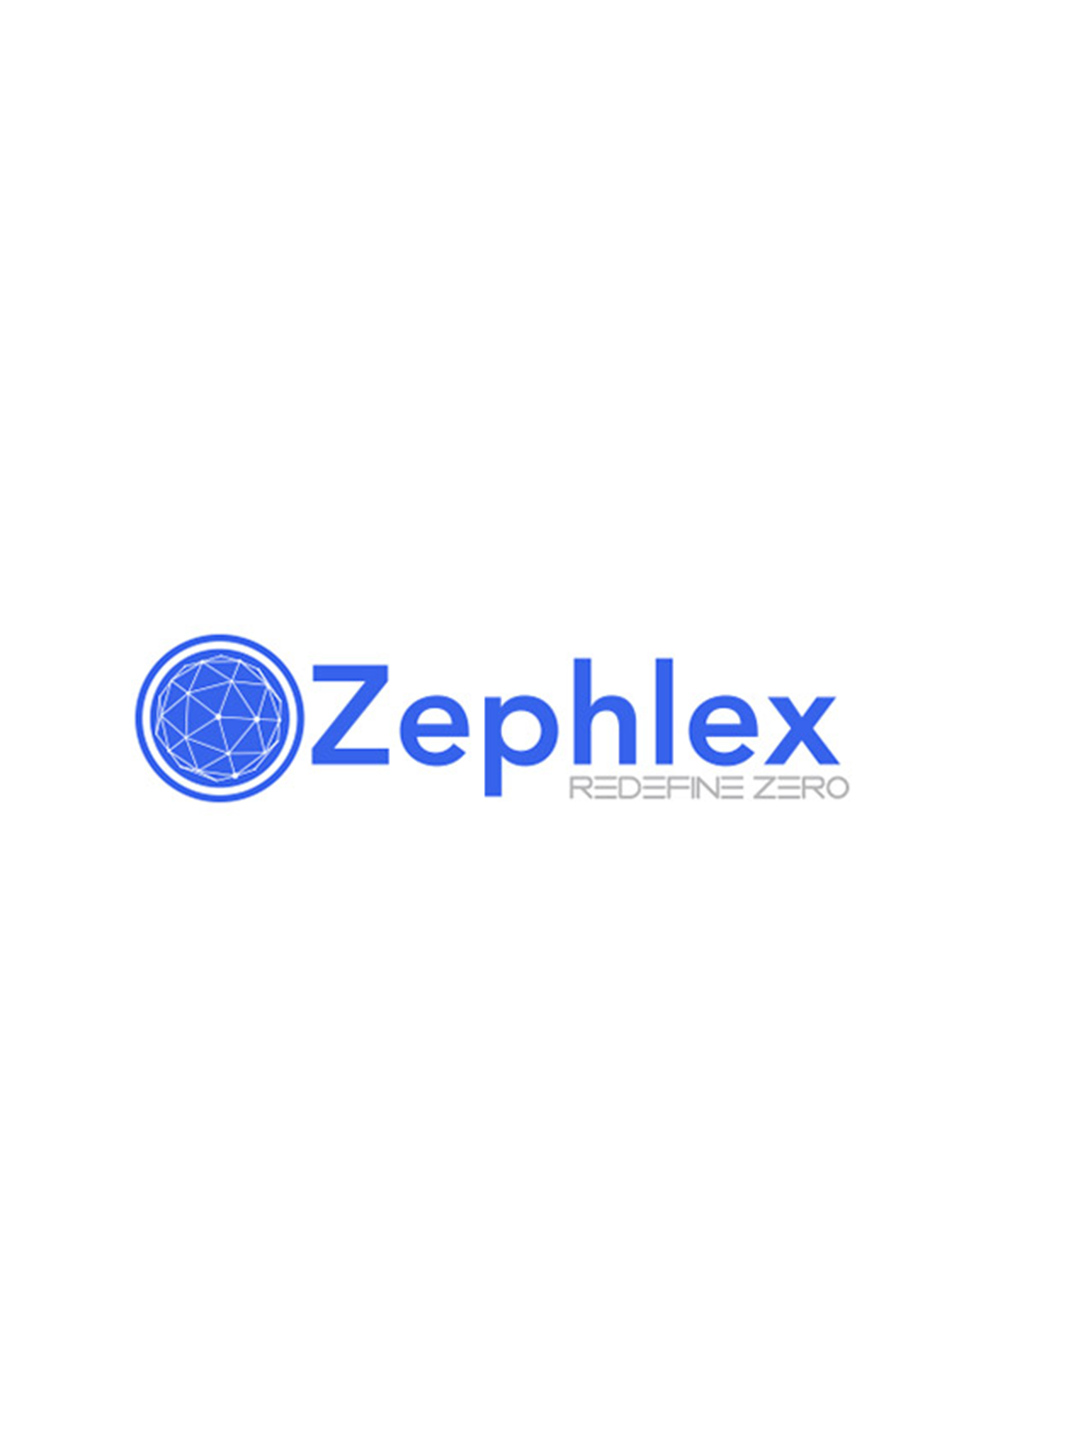 zephlex logo